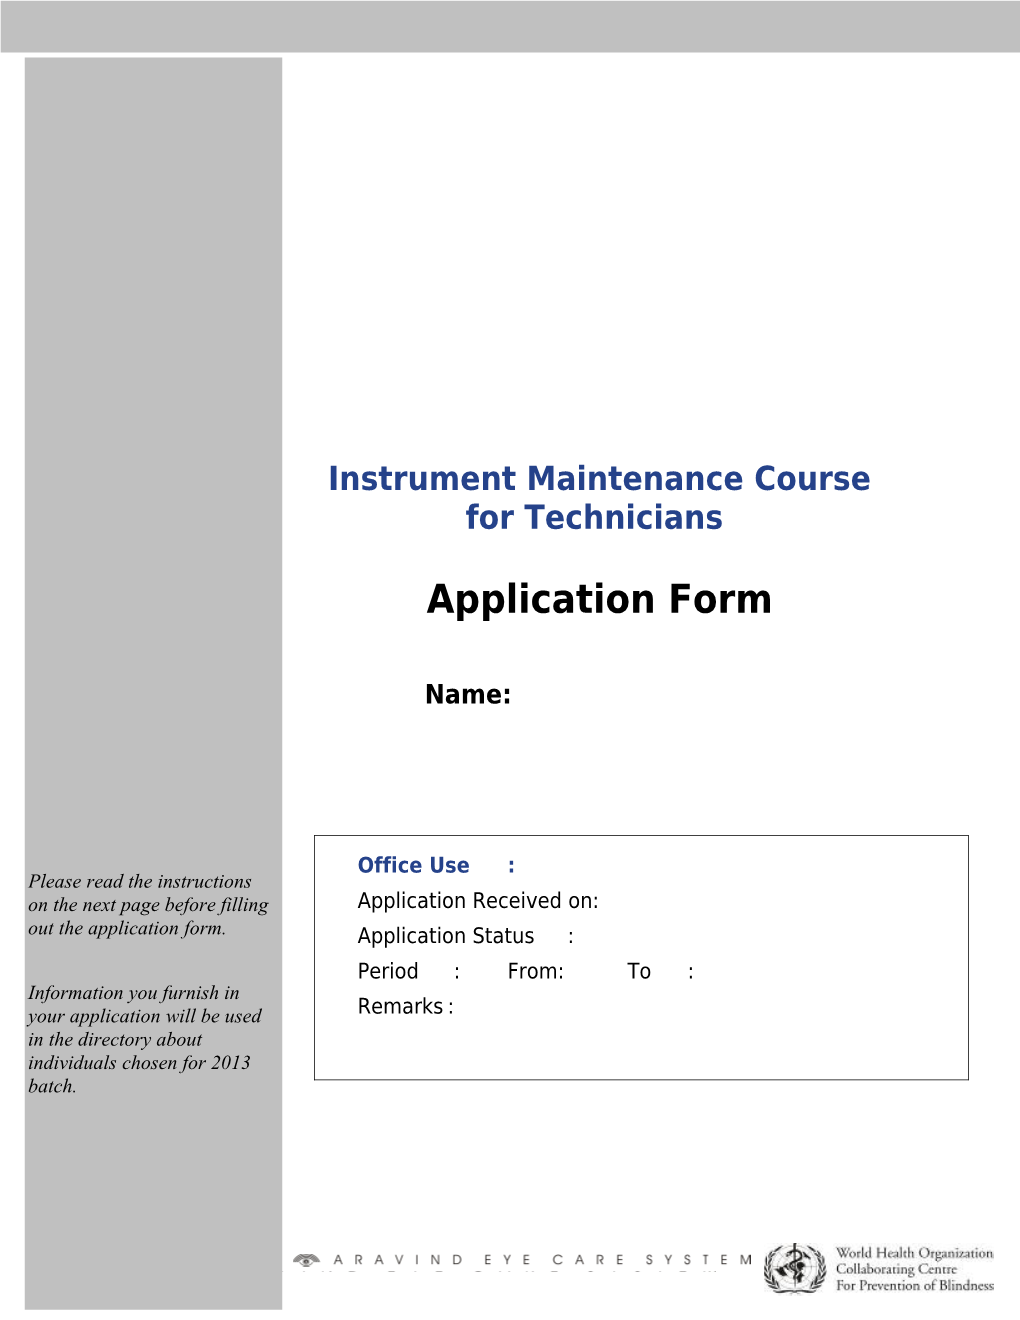 Instrument Maintenance Course for Technicians